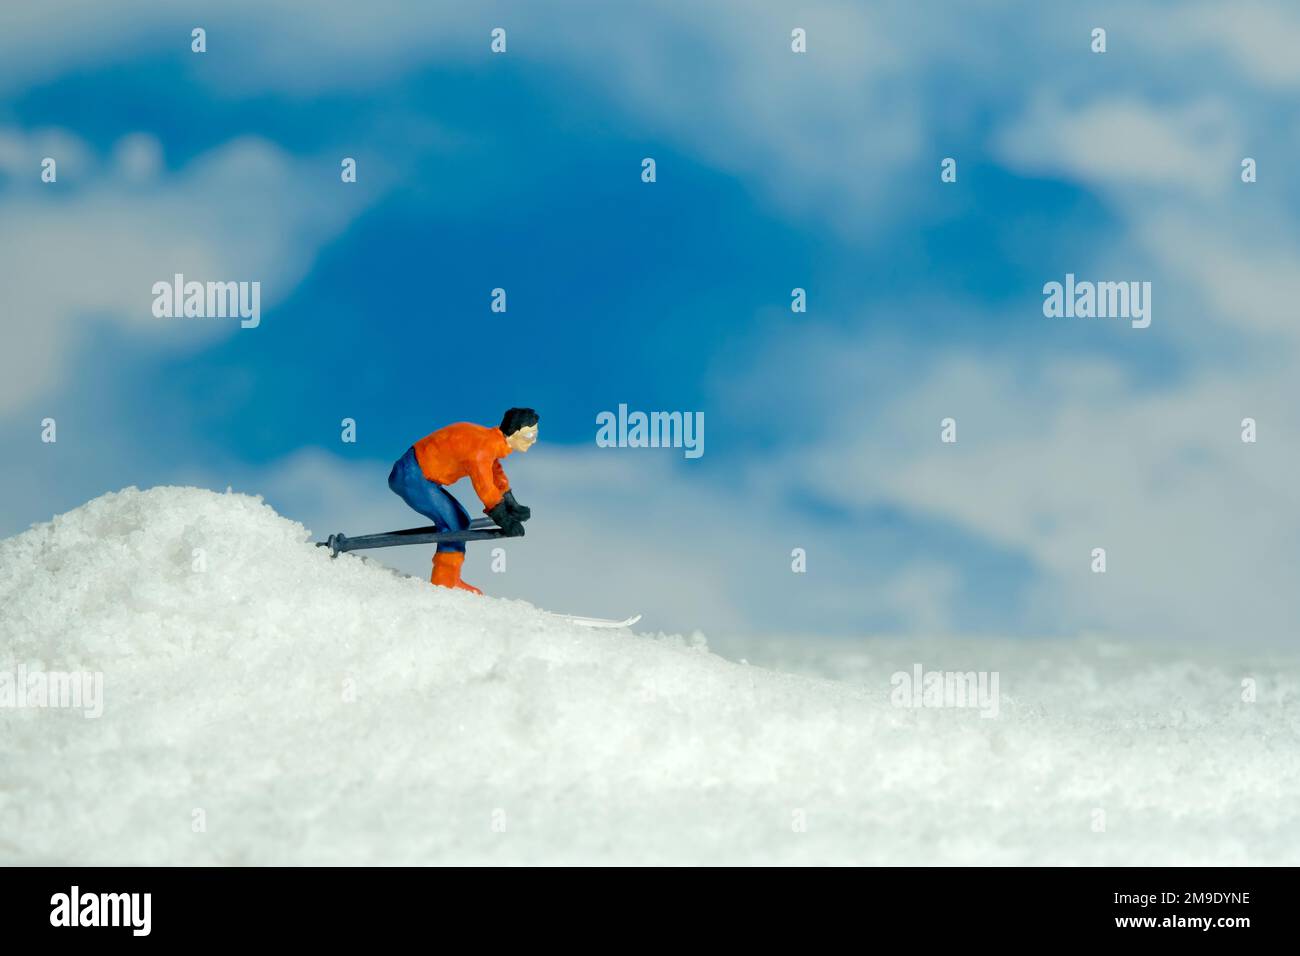 Photographie miniature de personnage de jouet de personnes. Sports d'hiver. Un coureur de ski alpin descend du sommet de la colline. Photo d'image Banque D'Images